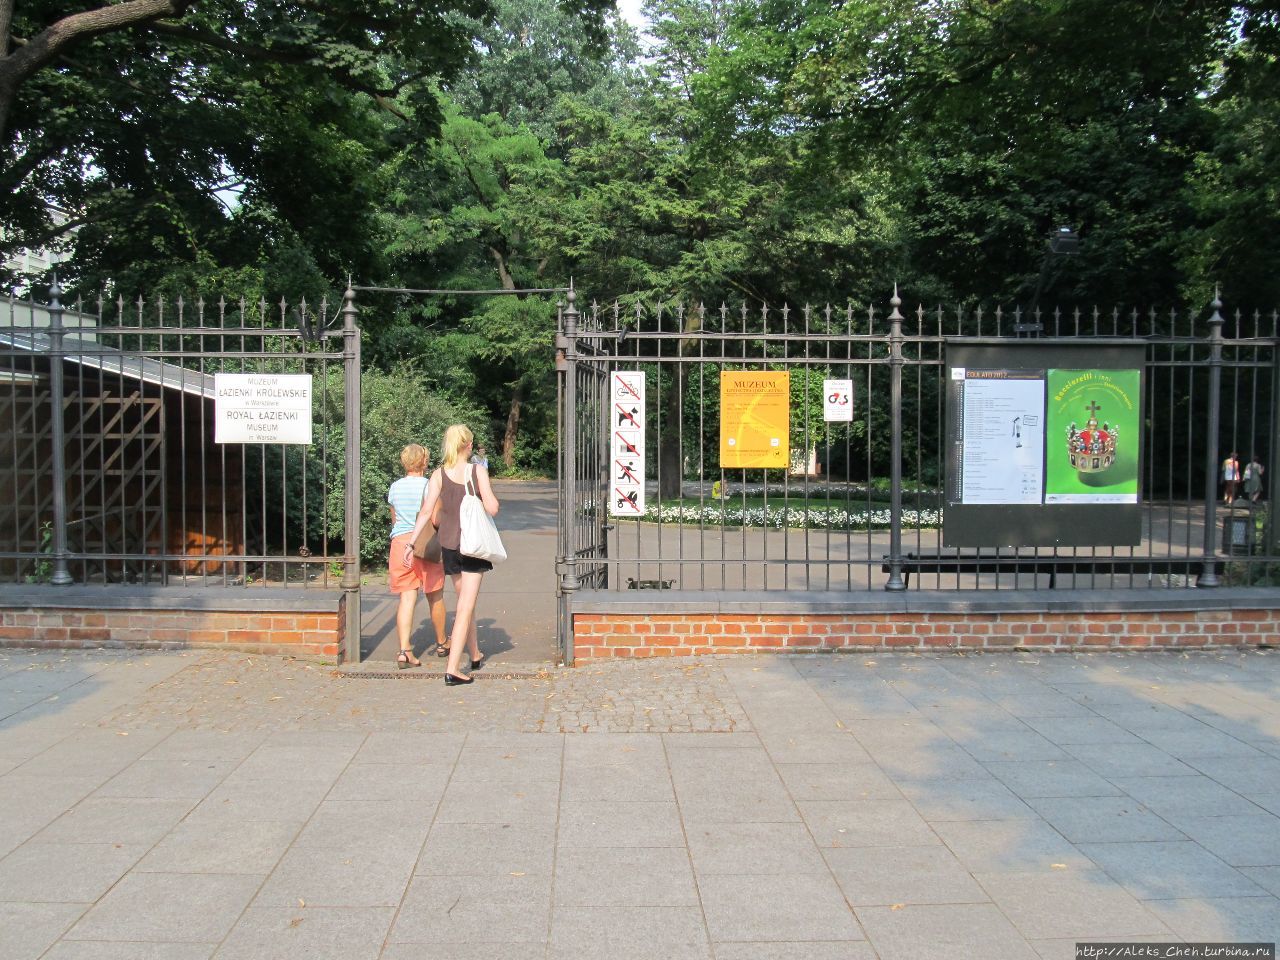 Вход в парк Варшава, Польша